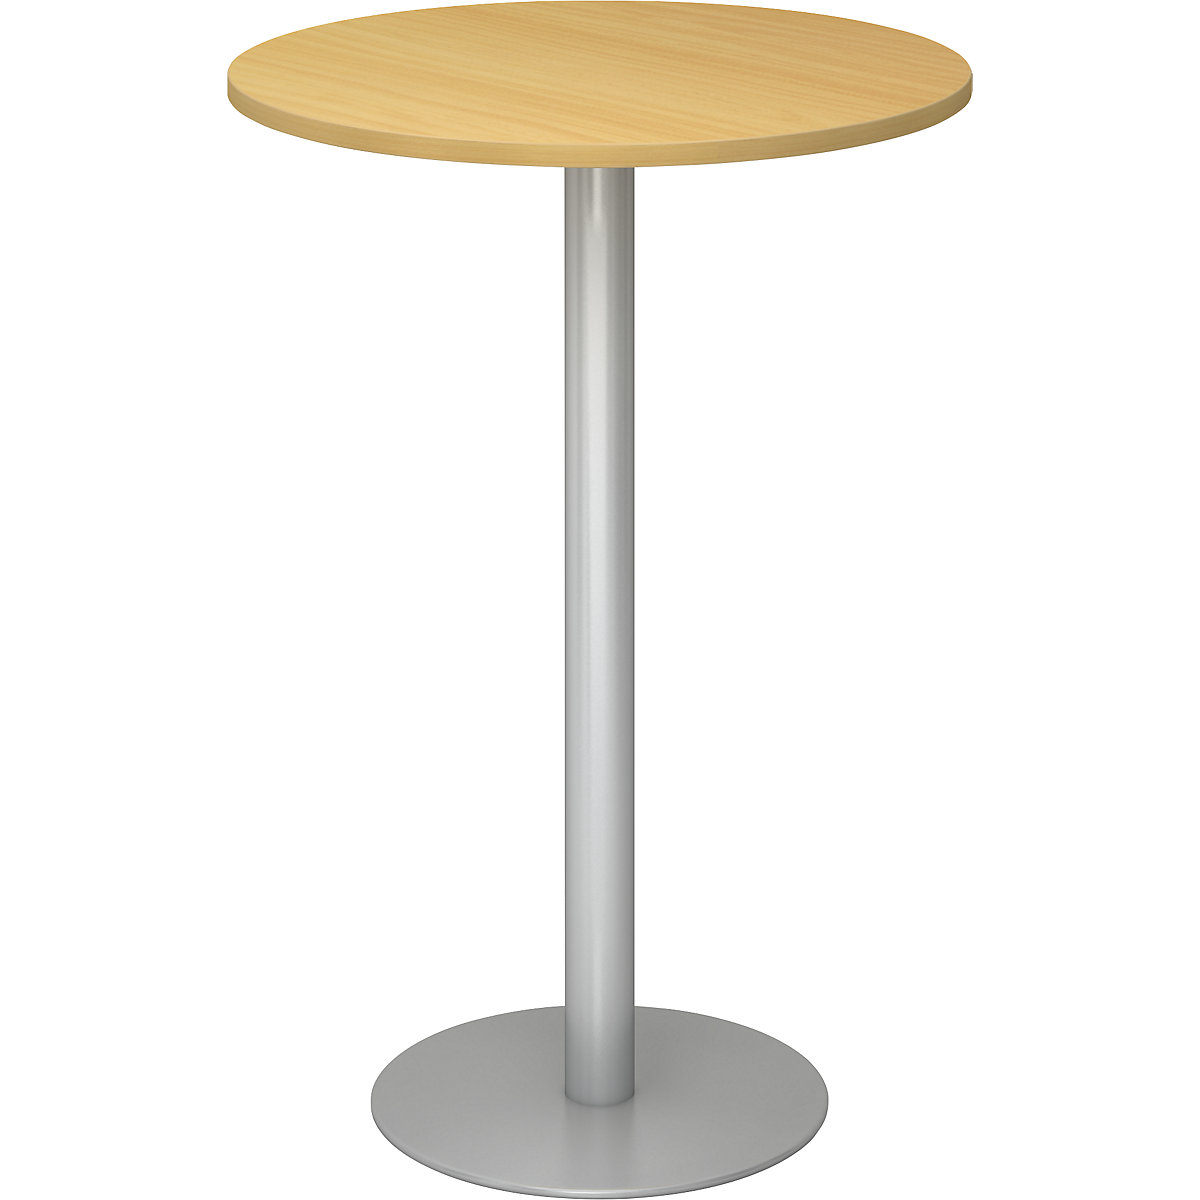 Állóasztal, Ø 800 mm, 1116 mm magas, ezüst váz, bükk-dekor asztallap